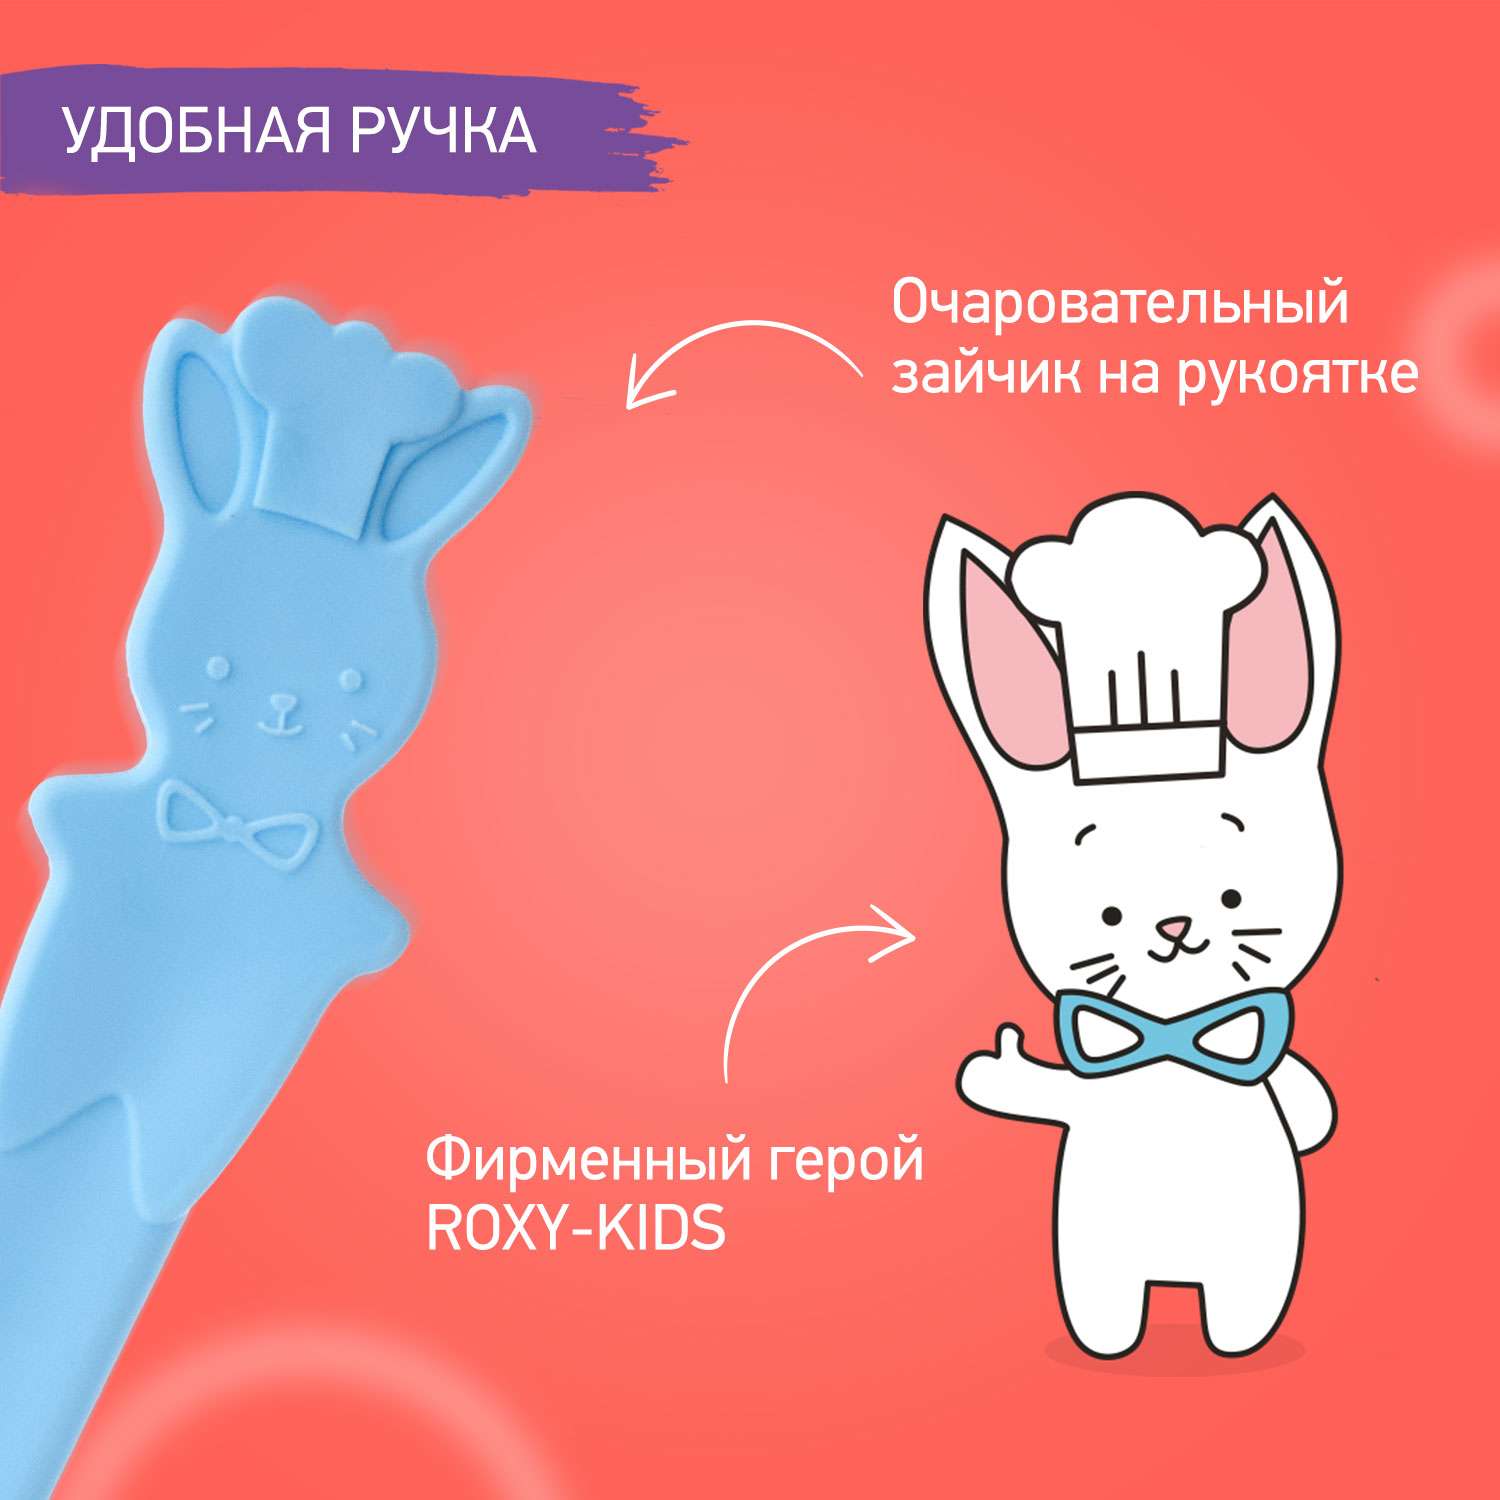 Набор ложек ROXY-KIDS для первого прикорма bunny cook цвет голубой - фото 6